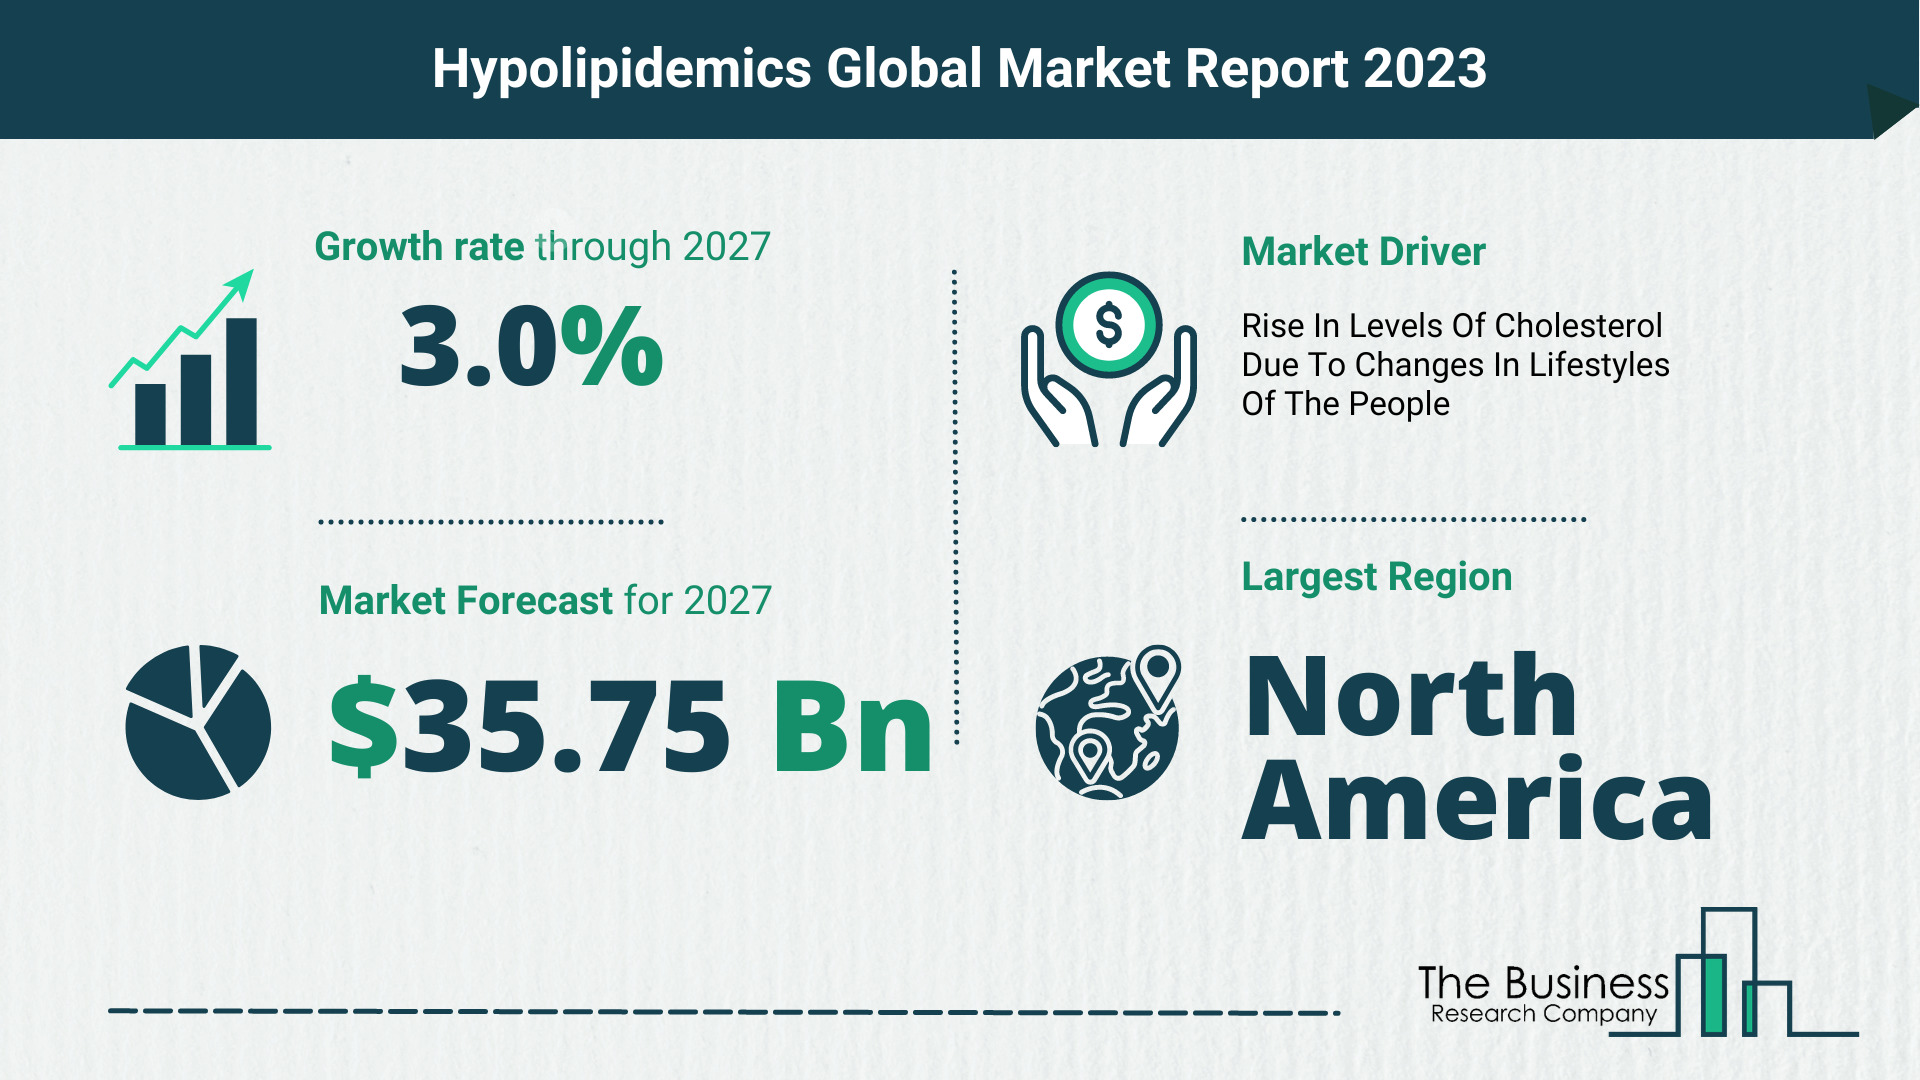 Global Hypolipidemics Market Size